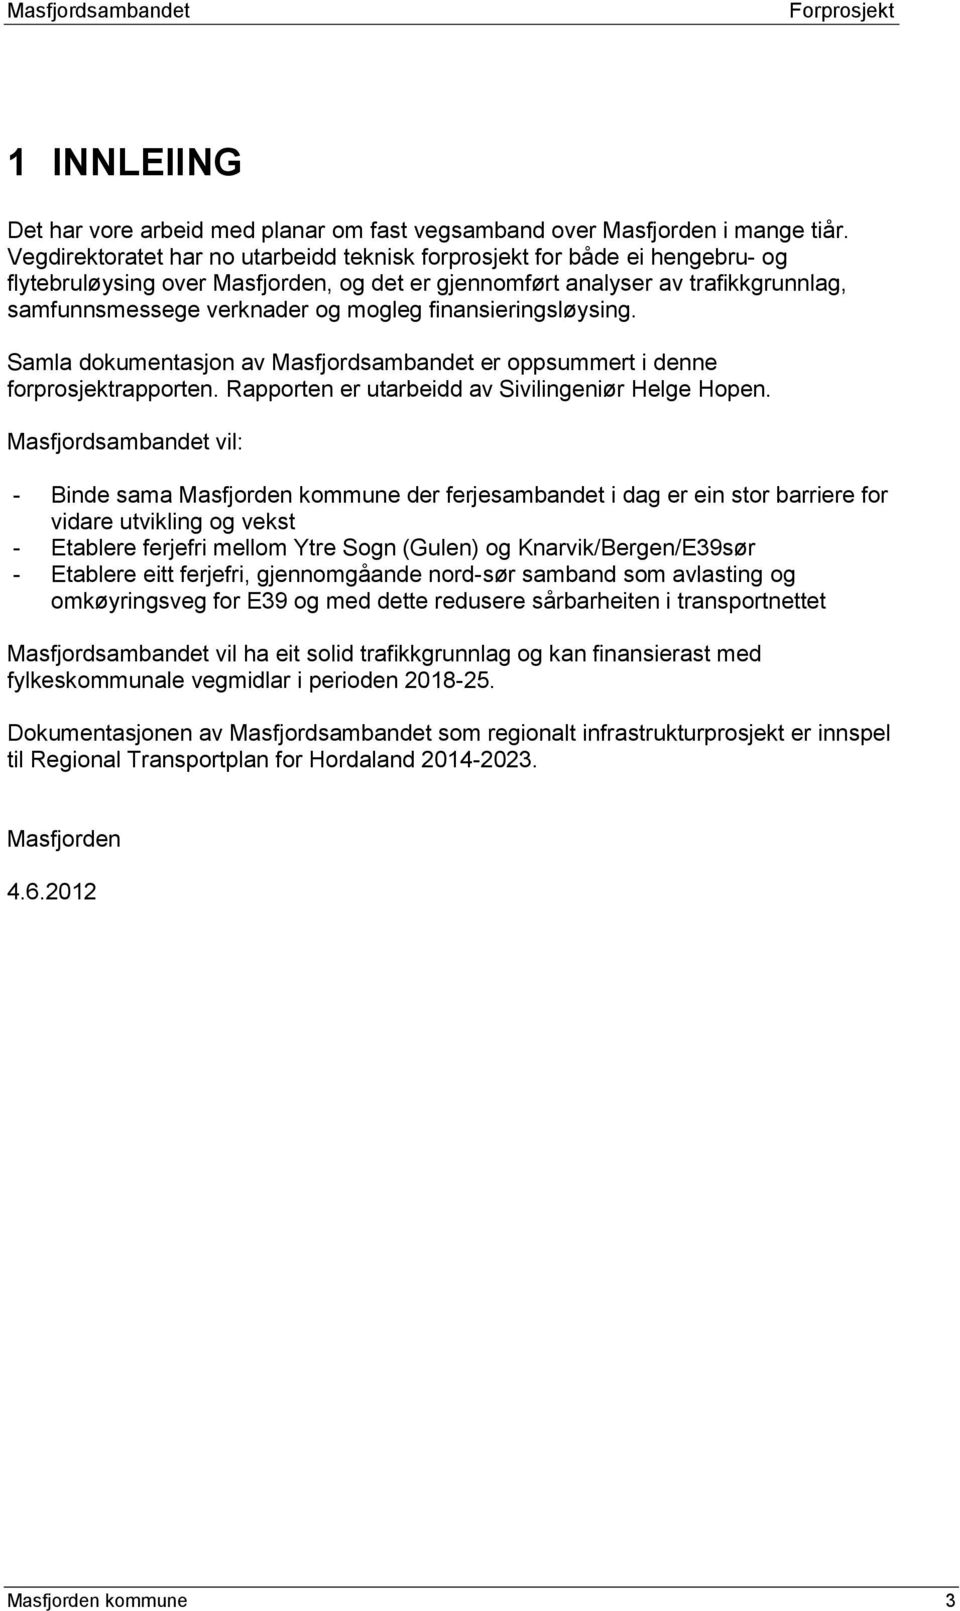 finansieringsløysing. Samla dokumentasjon av Masfjordsambandet er oppsummert i denne forprosjektrapporten. Rapporten er utarbeidd av Sivilingeniør Helge Hopen.